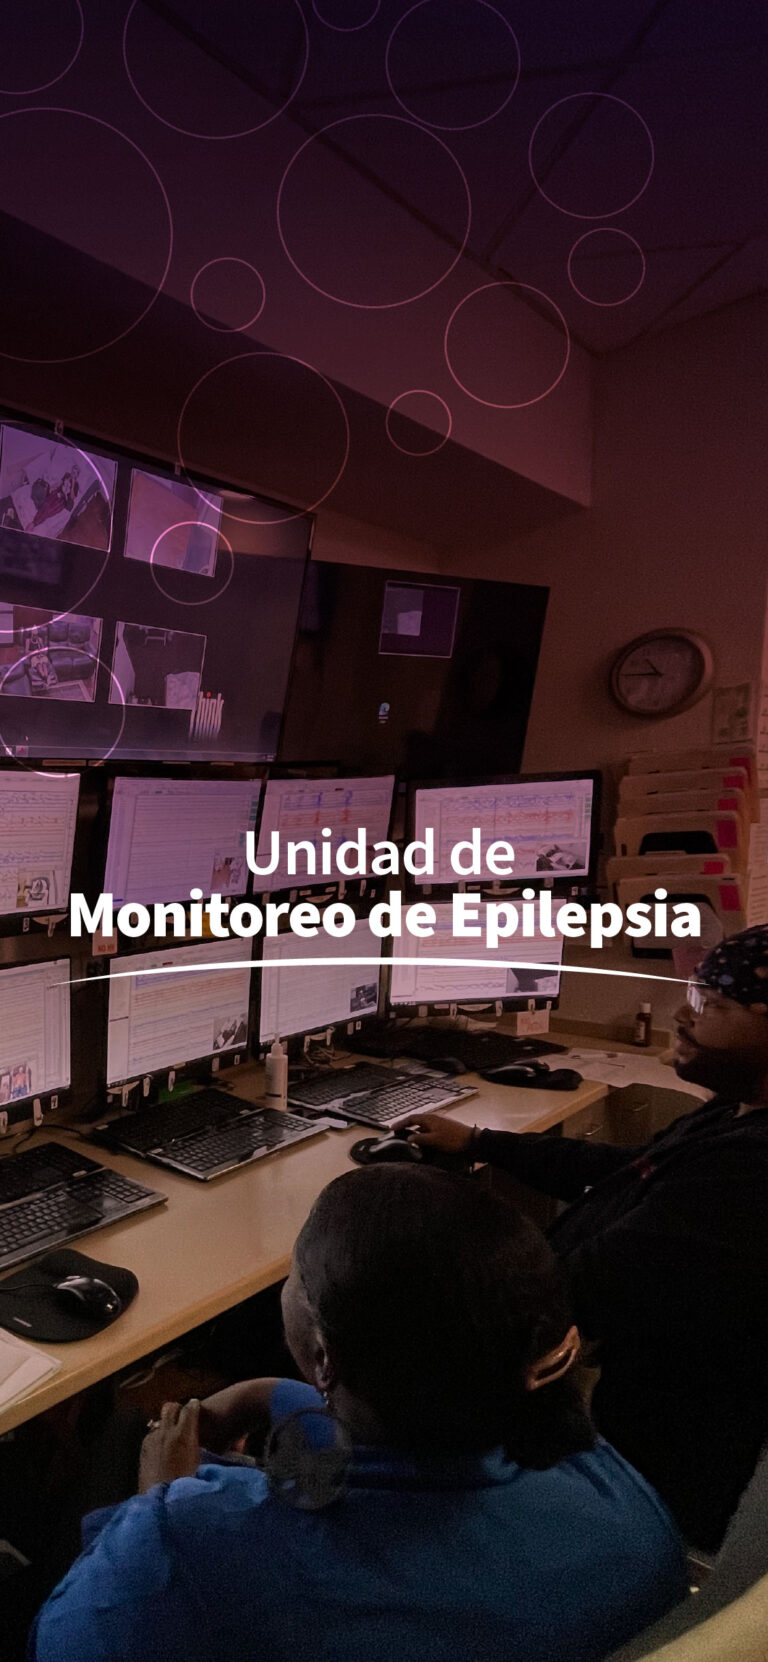 Epilepsy Monitoring unit